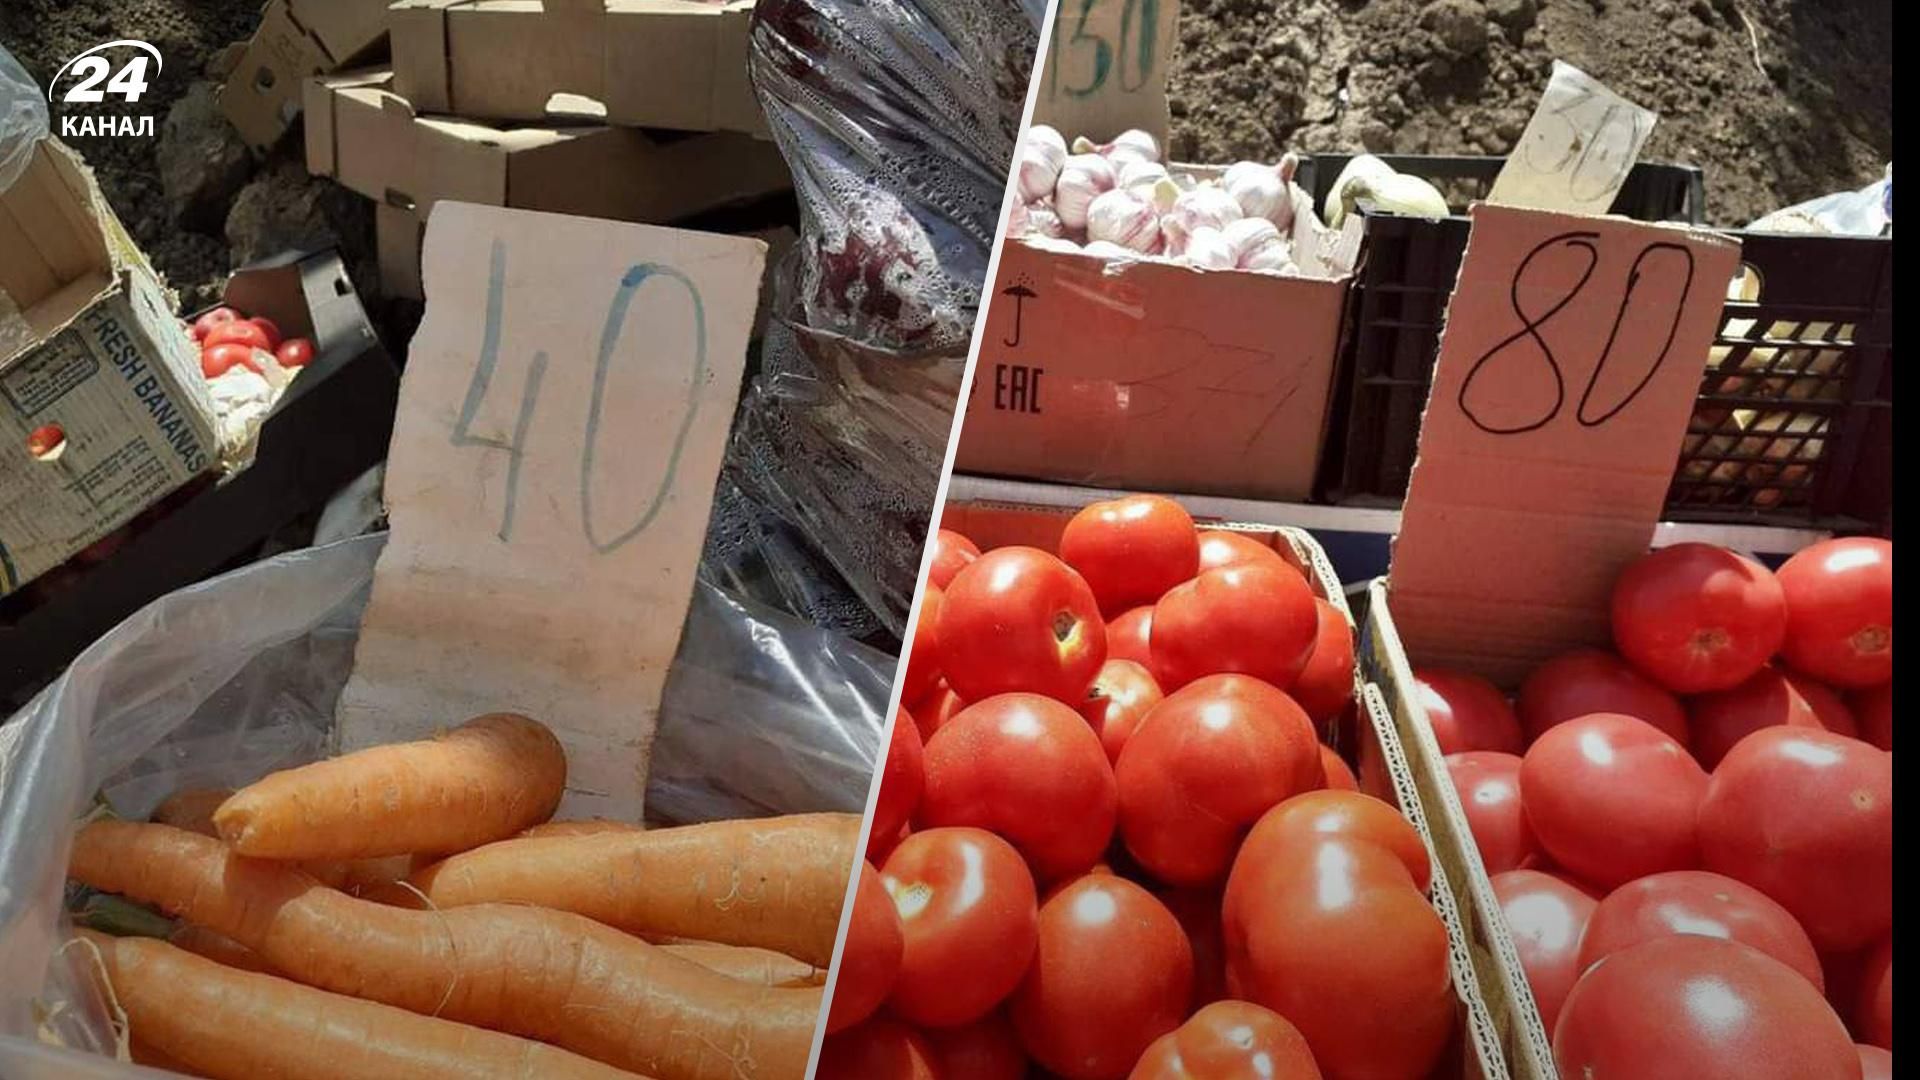 Клубника по 65, картофель по 30: какие цены на овощи в Мариуполе и можно ли рассчитаться гривнами